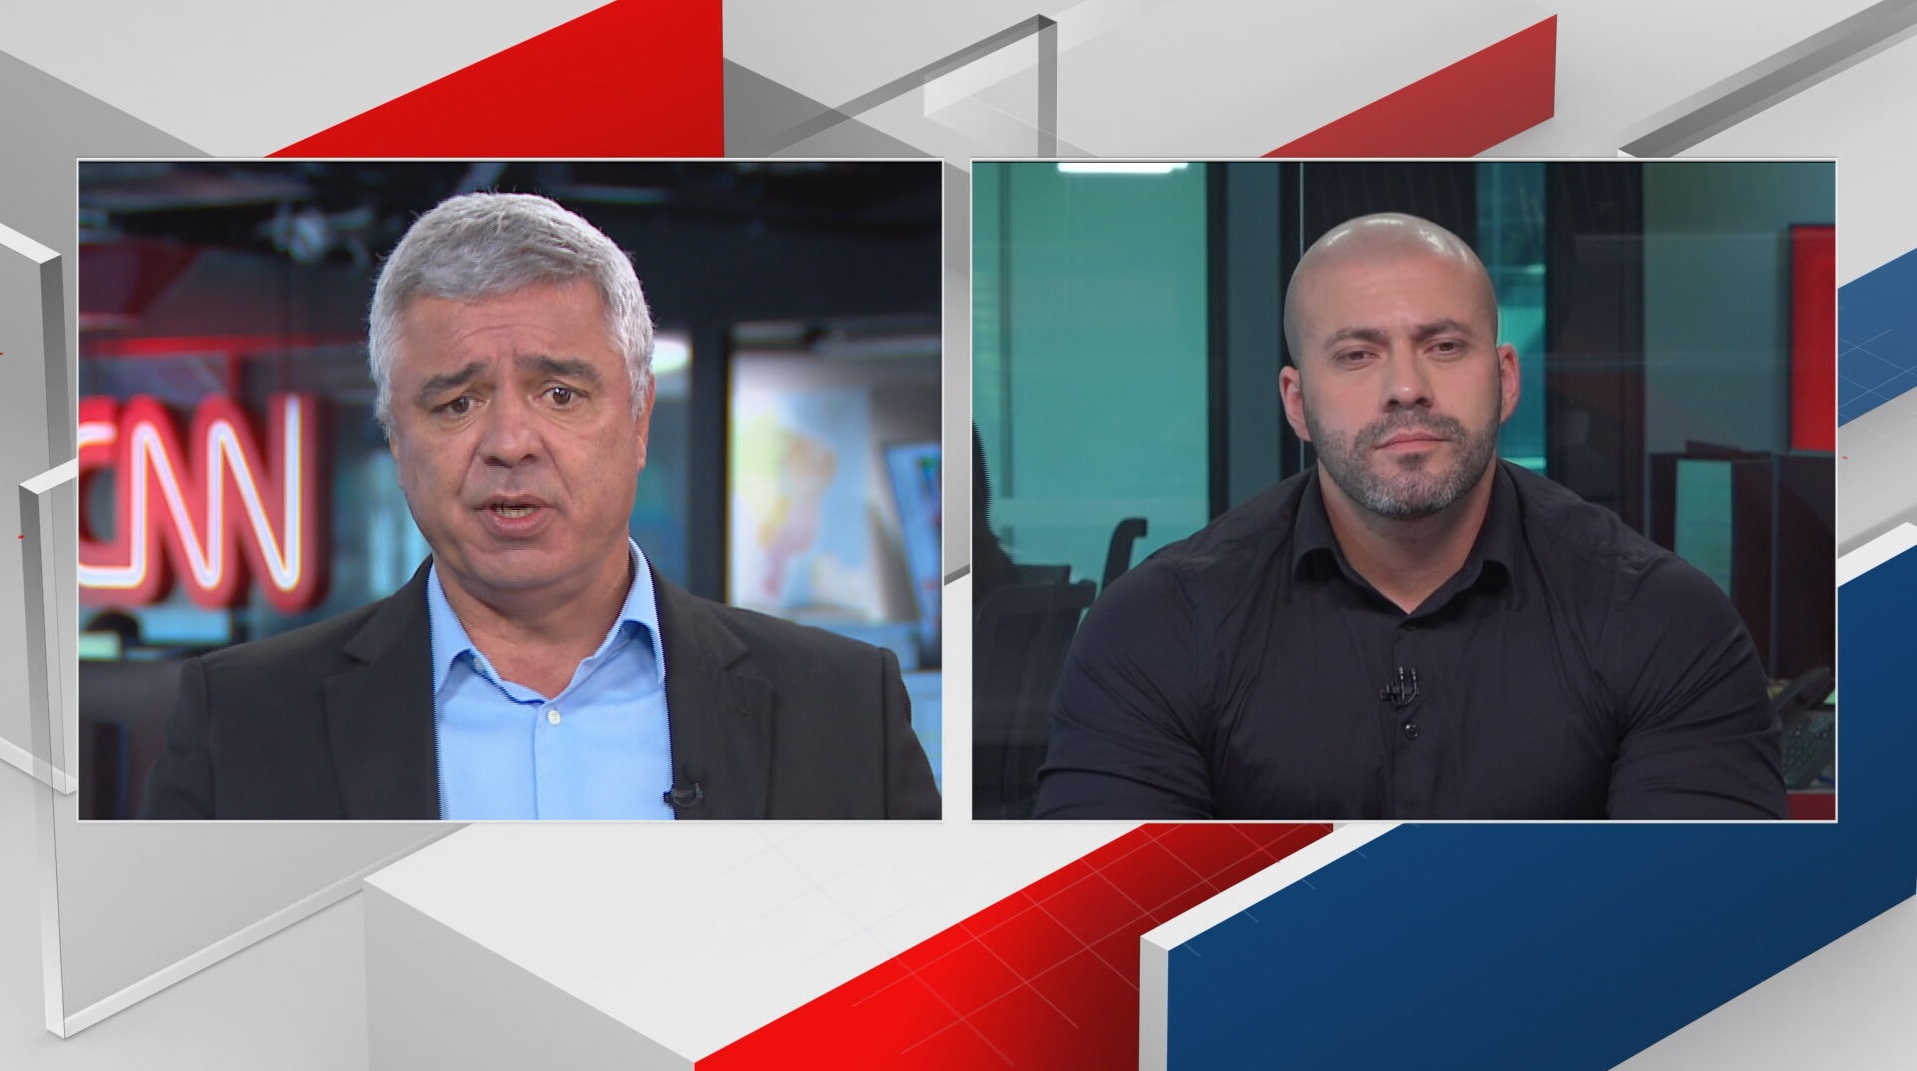 Os deputados Major Olímpio (PSL) e Daniel Silveira (PSL) debatem sobre negociaçã